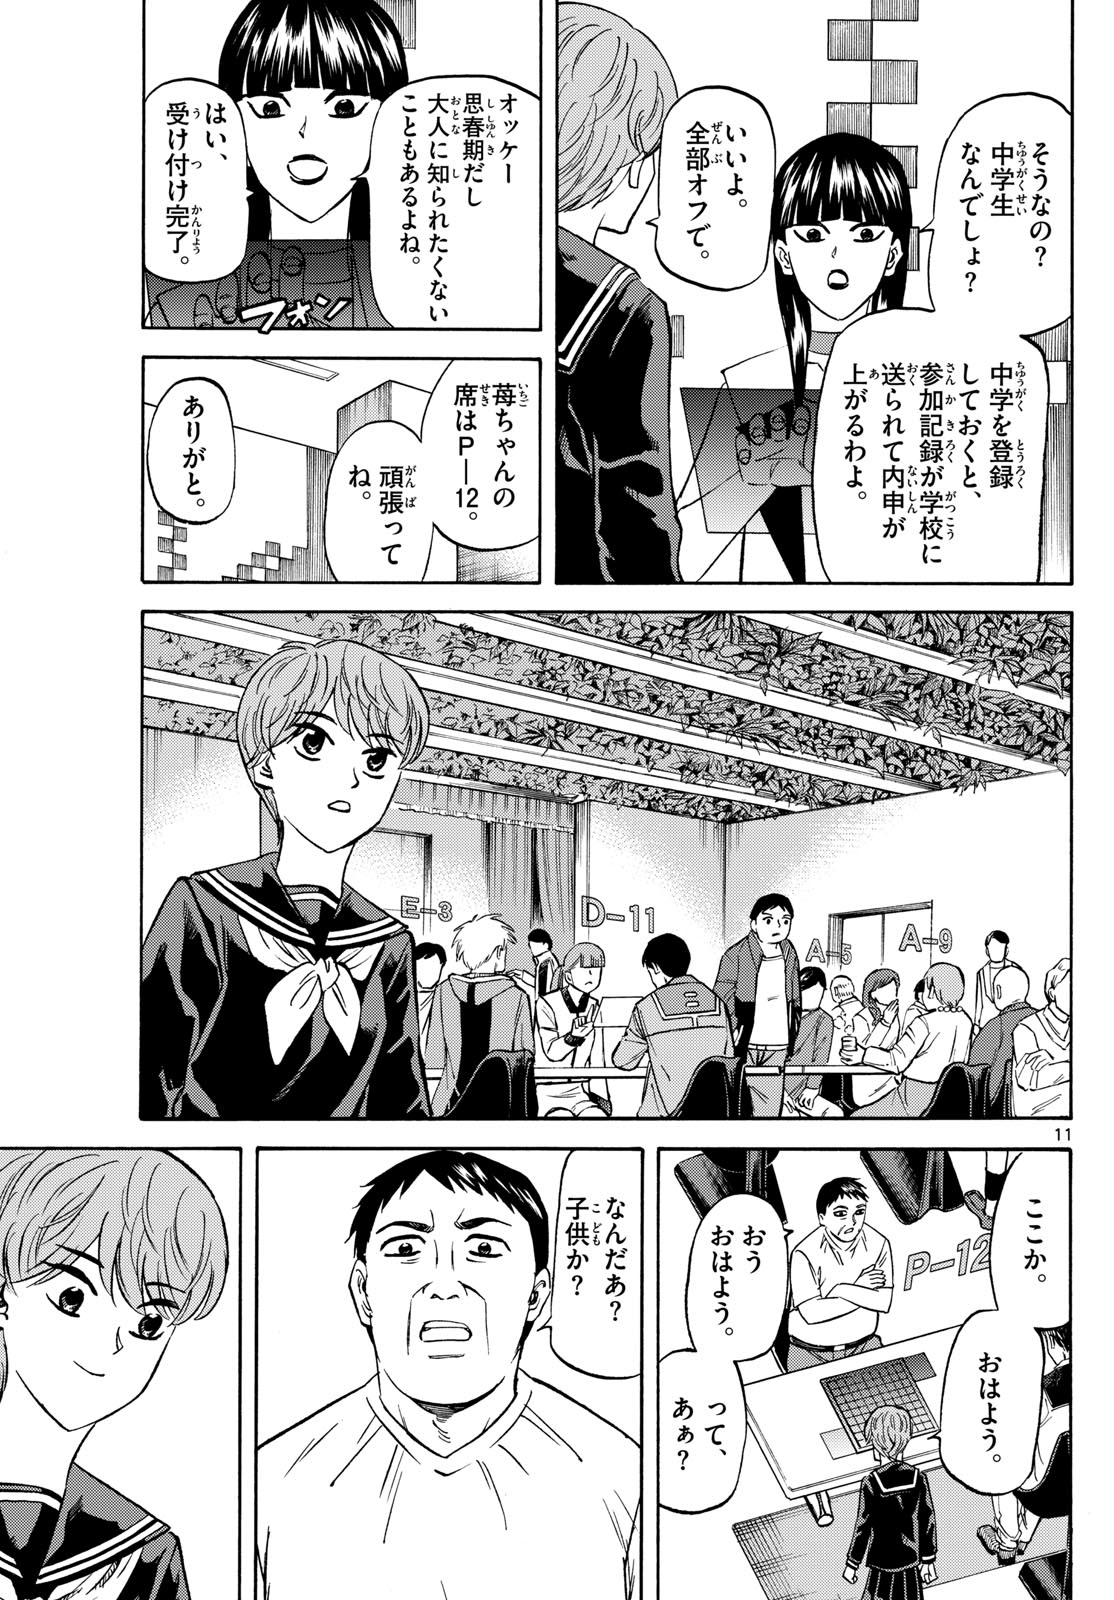 Tatsu to Ichigo - Chapter 185 - Page 11